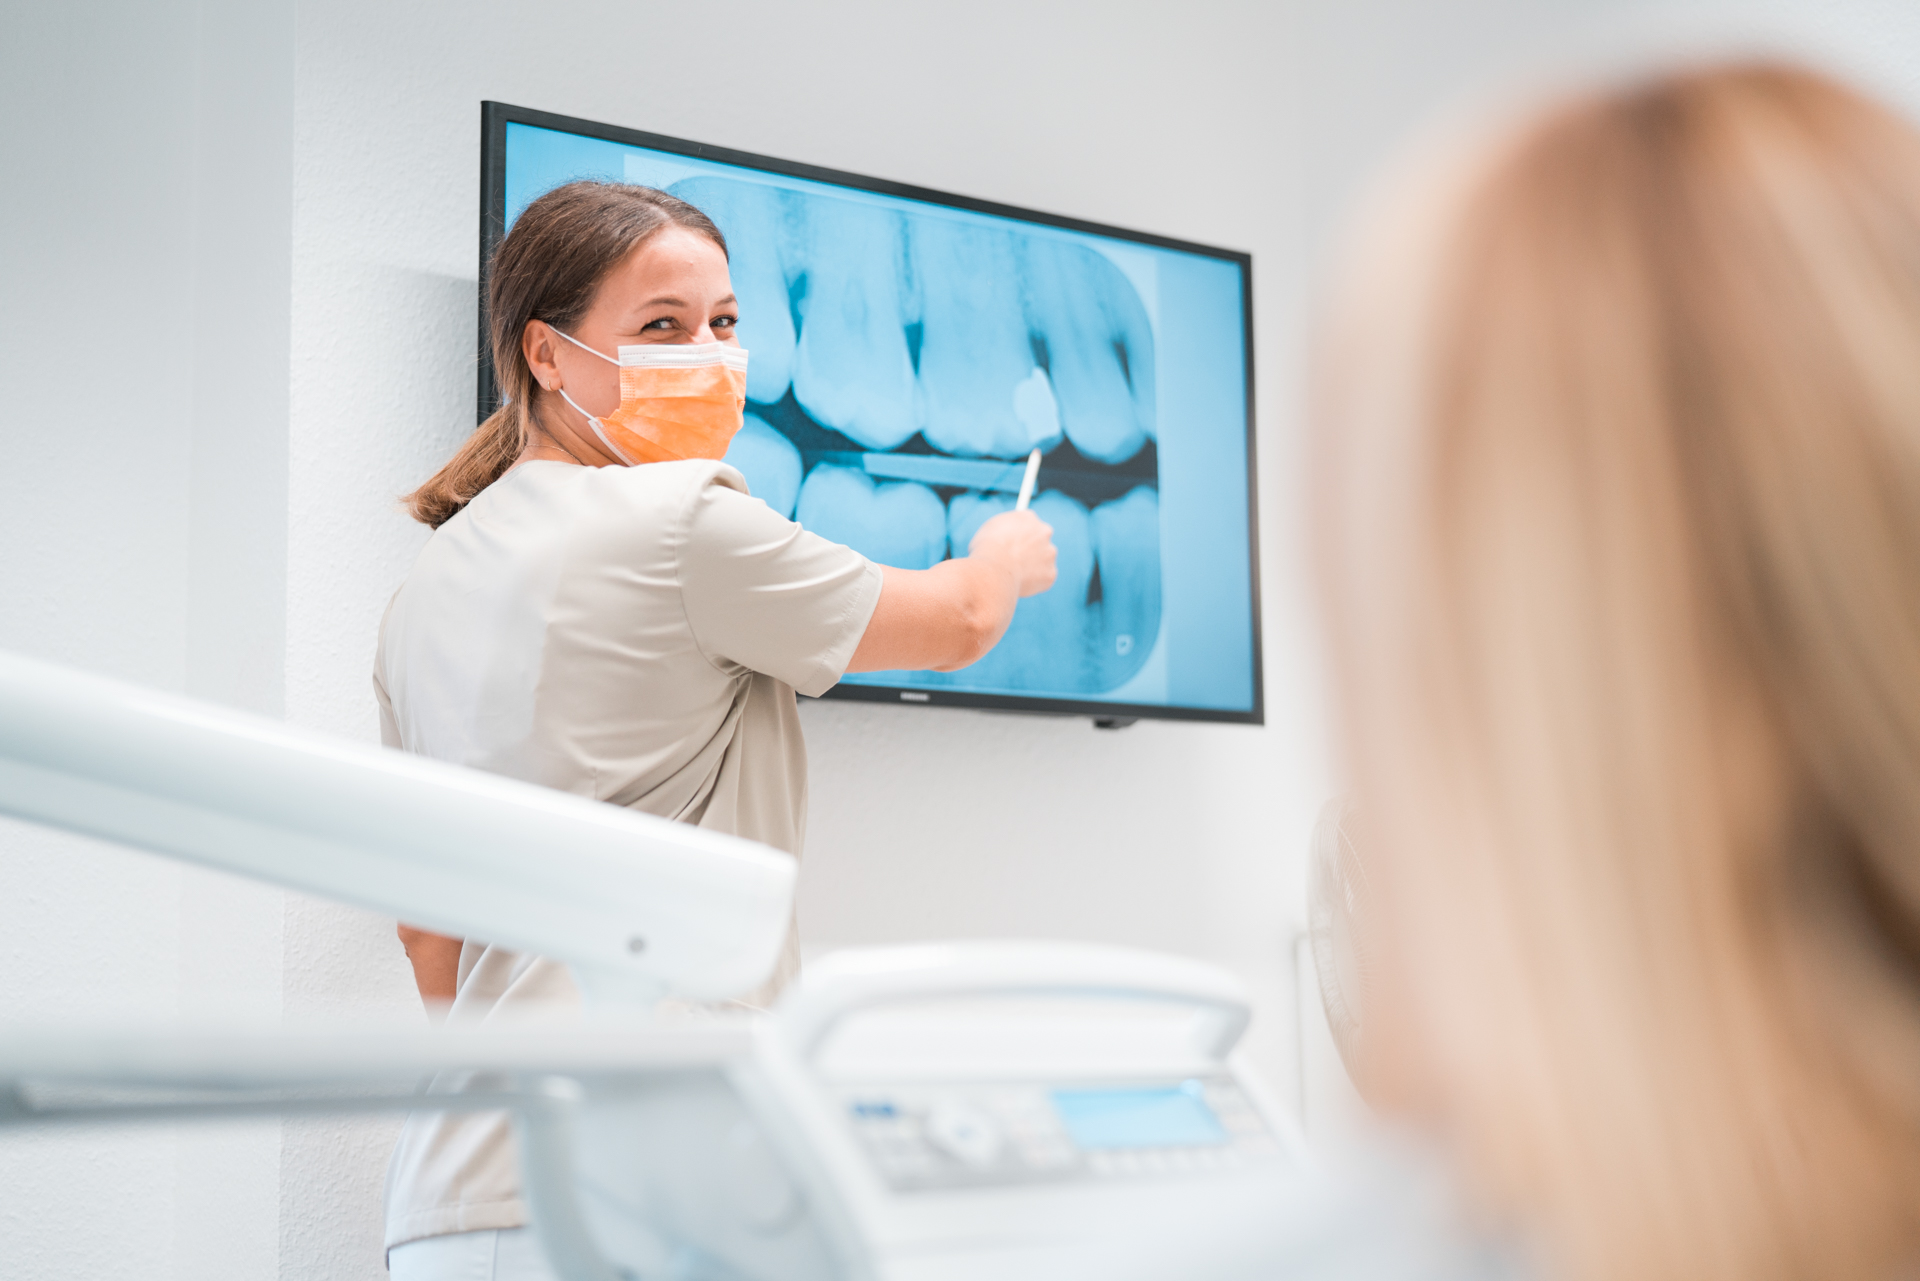 Zahnarzthelferin zeigt Zahnimplantat auf Bildschirm